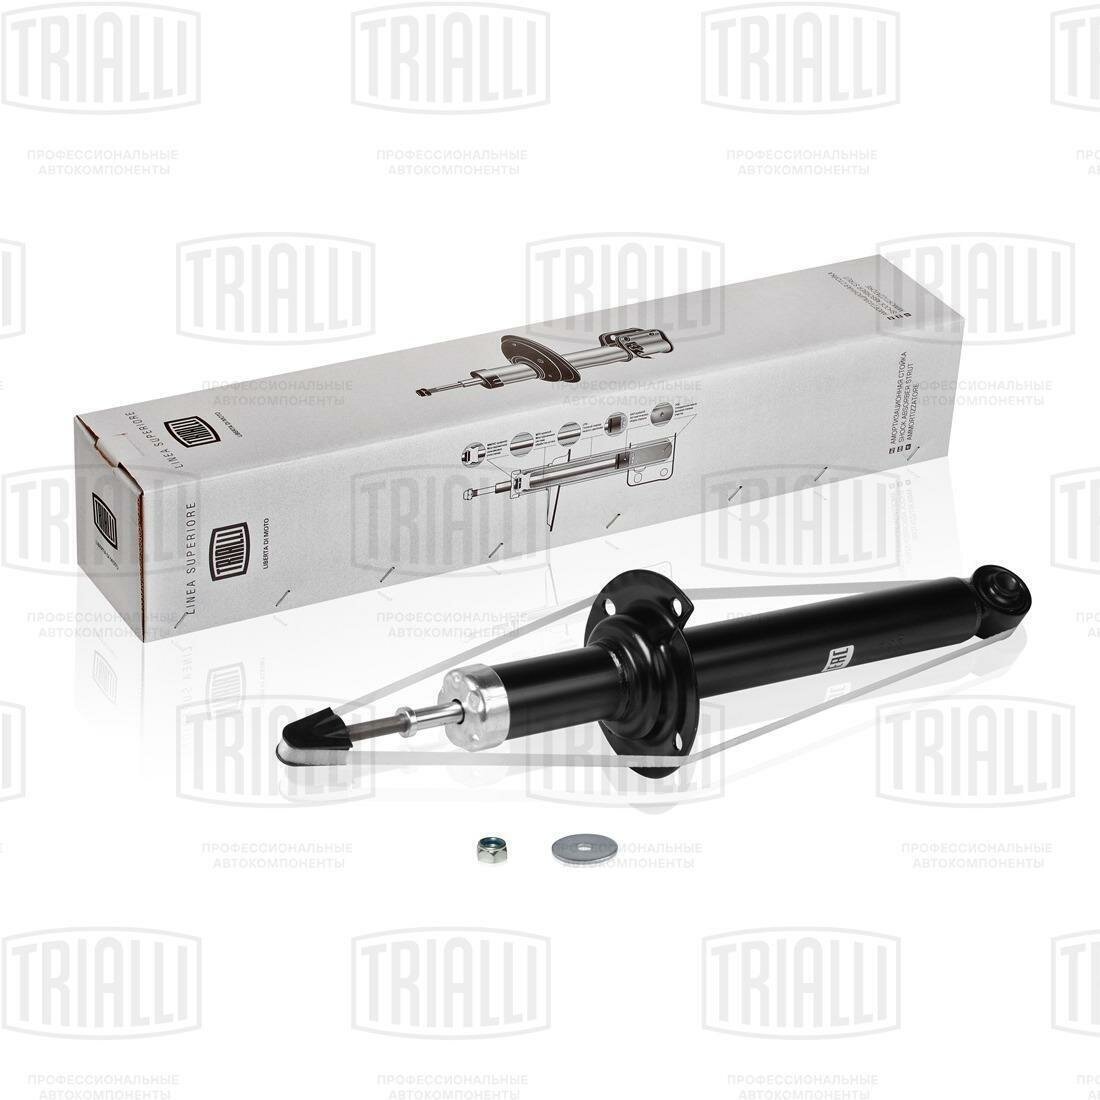 Амортизатор задний для автомобиля Honda Accord (02 ) TRIALLI AG 23503